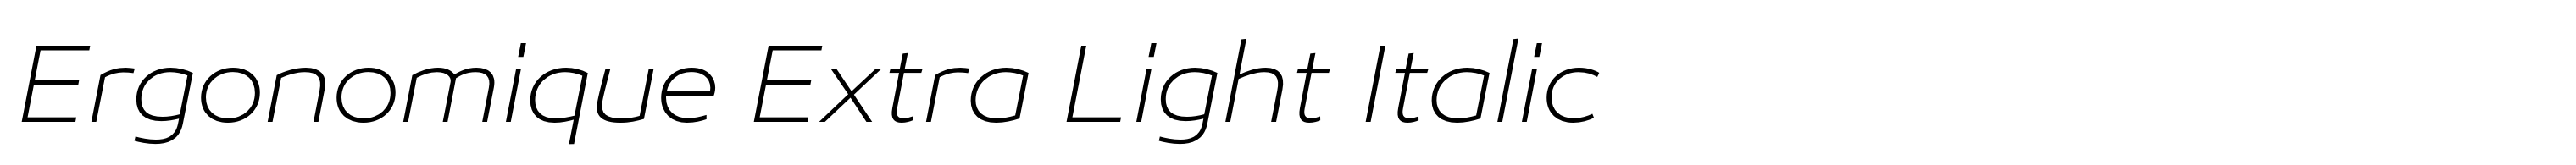 Ergonomique Extra Light Italic